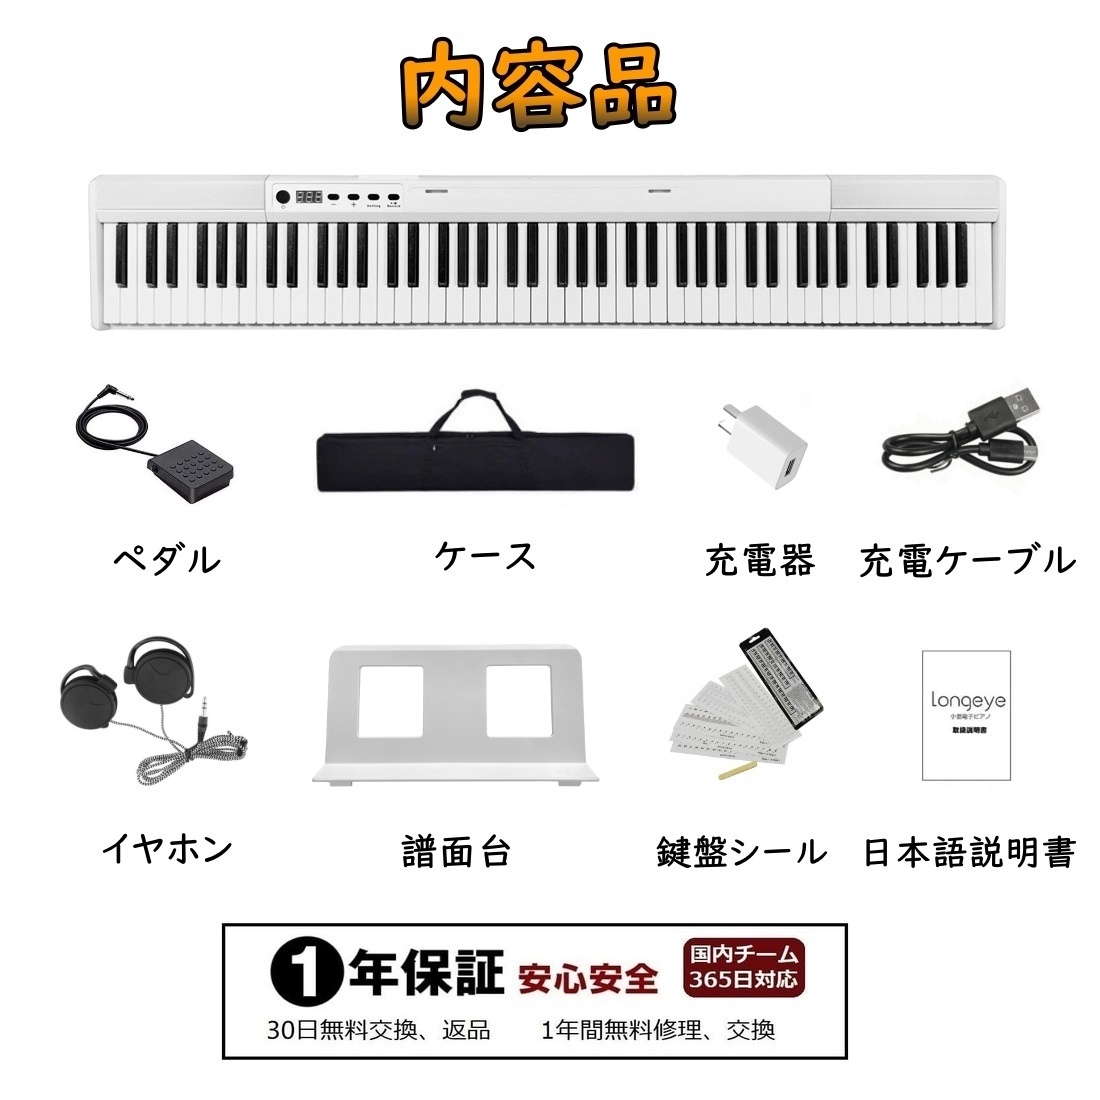 電子ピアノ 【2022最新版ー譜面台本体に付け】Longeye 88鍵盤 ピアノ 持ち運び 超小型 10mmストローク 練習にピッタリ ケース付き  MIDI対応 一年保証 (白)